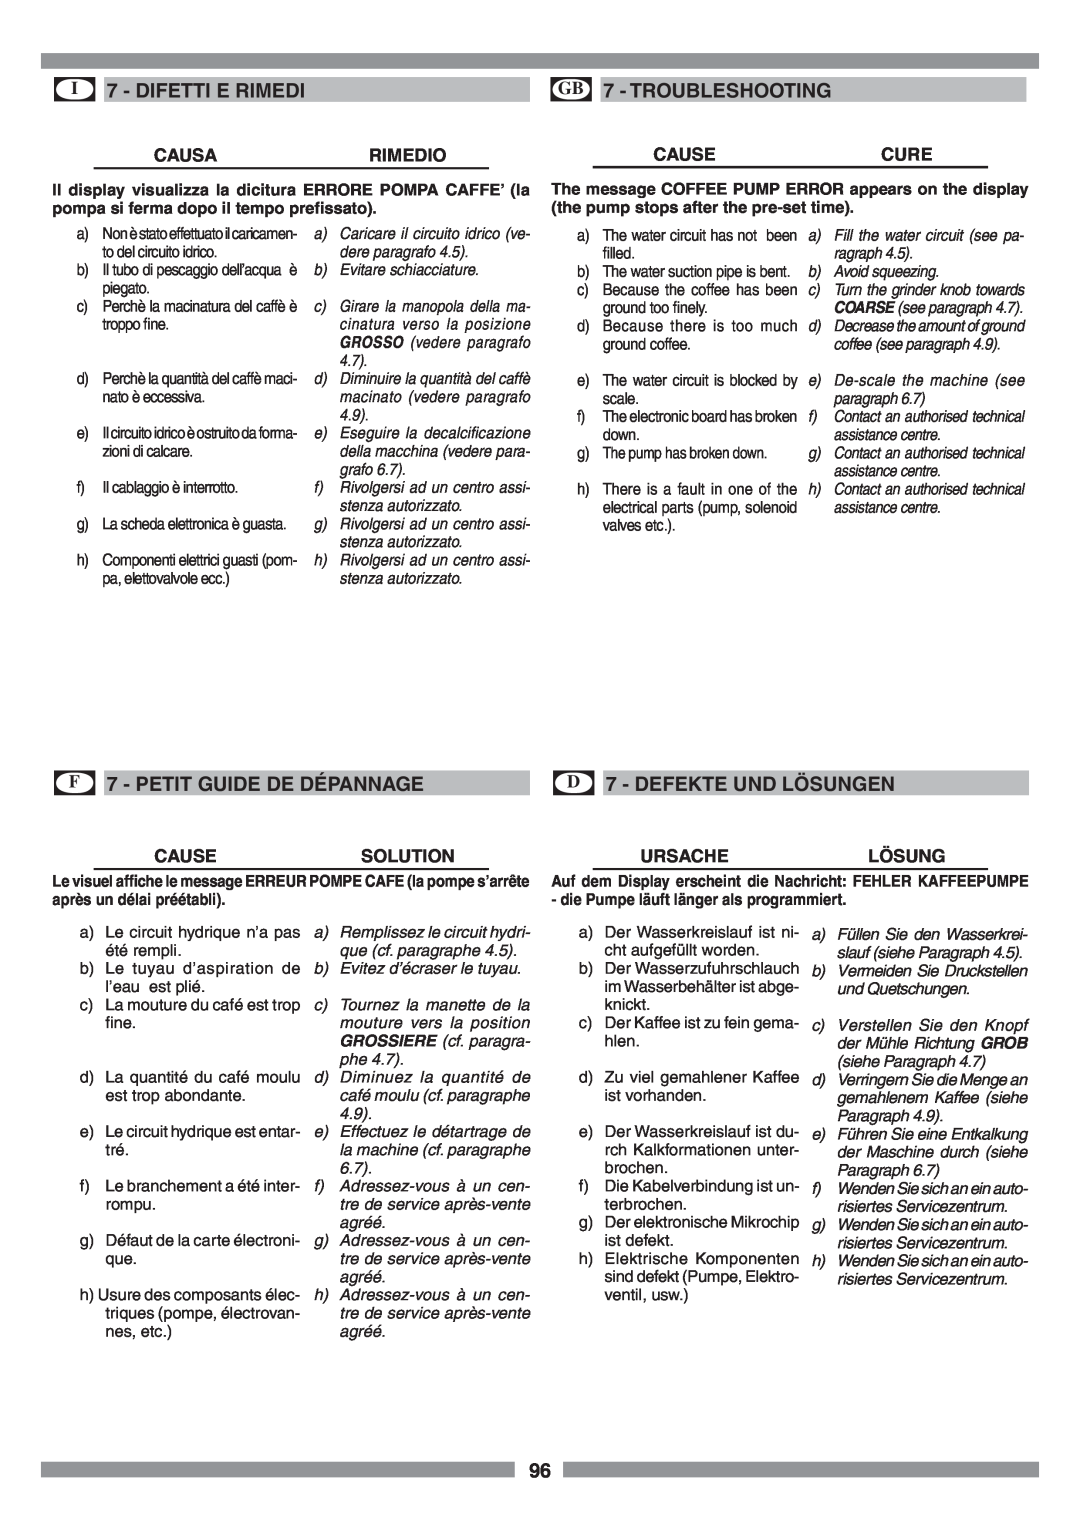 Smeg SCM1 manual I 7 - DIFETTI E RIMEDI, GB 7 - TROUBLESHOOTING, F 7 - PETIT GUIDE DE DÉPANNAGE, D 7 - DEFEKTE UND LÖSUNGEN 